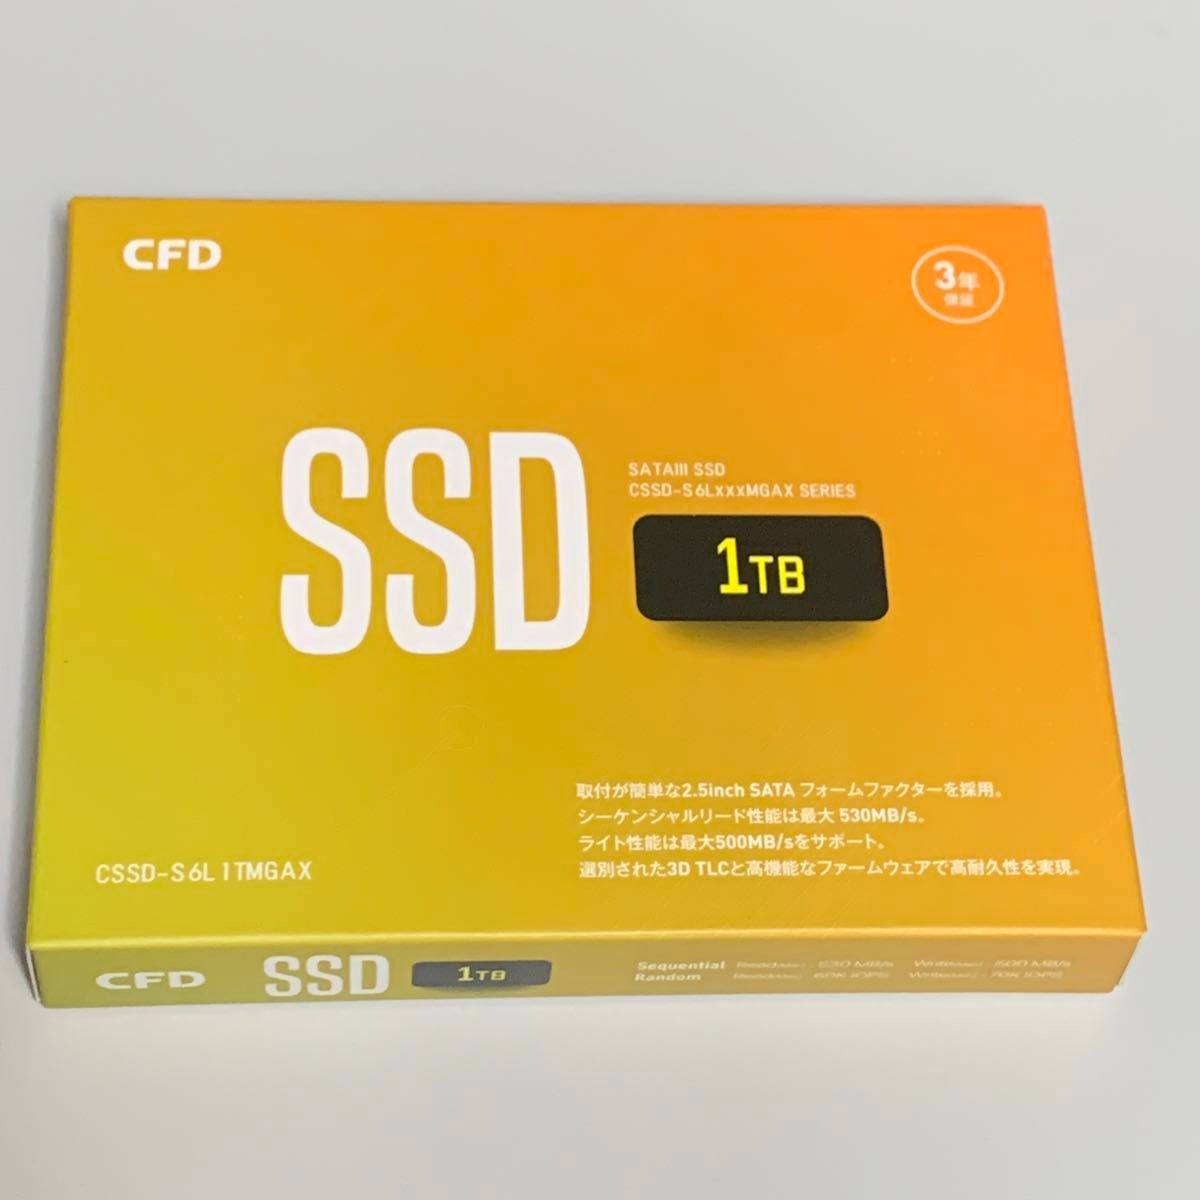 CFD MGAXシリーズ 2.5インチ 1TB SSD CSSD-S6L1TMGAX